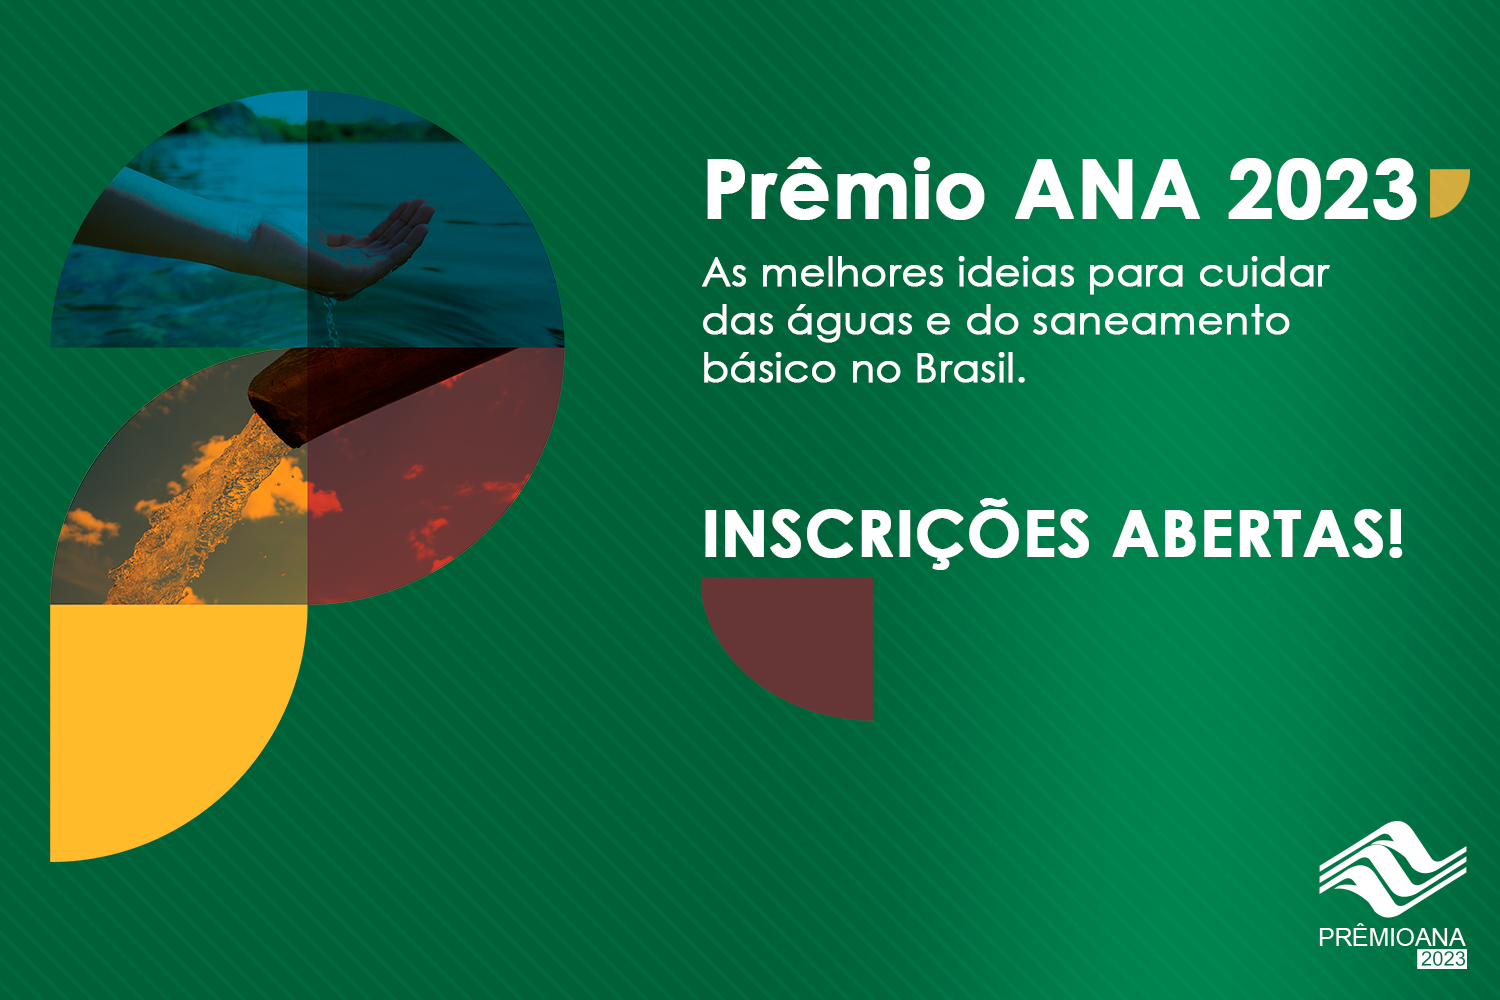 Faltam 2 semanas para o fim das inscrições para o Prêmio ANA 2023